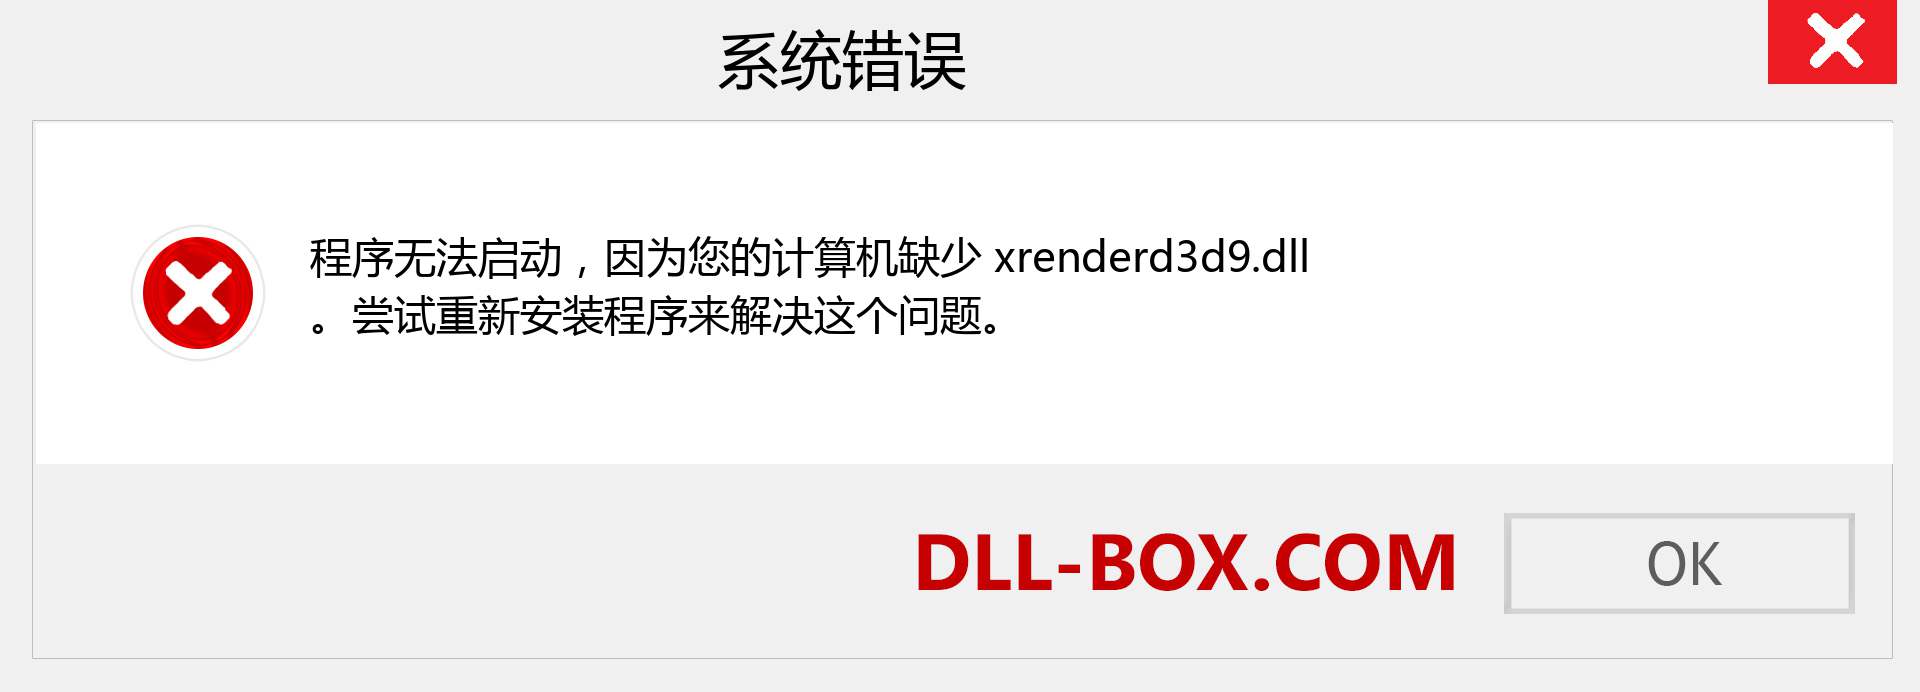 xrenderd3d9.dll 文件丢失？。 适用于 Windows 7、8、10 的下载 - 修复 Windows、照片、图像上的 xrenderd3d9 dll 丢失错误